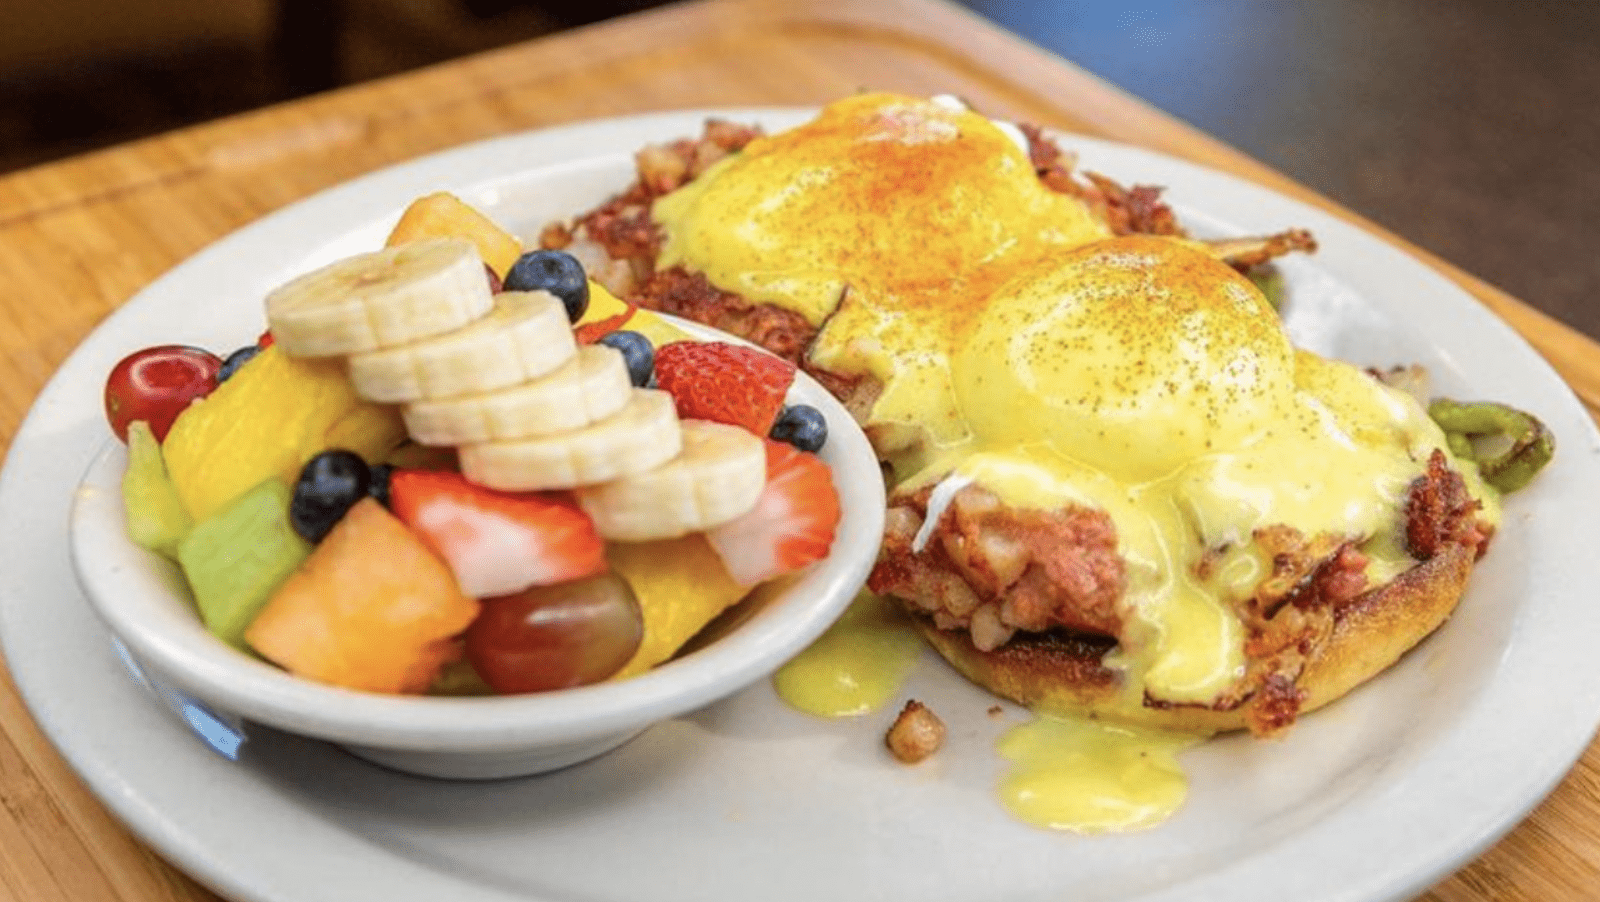 Bill_s-Cafe-South-Bay-Breakfast-@billscafewillowglen-800x450-1.png